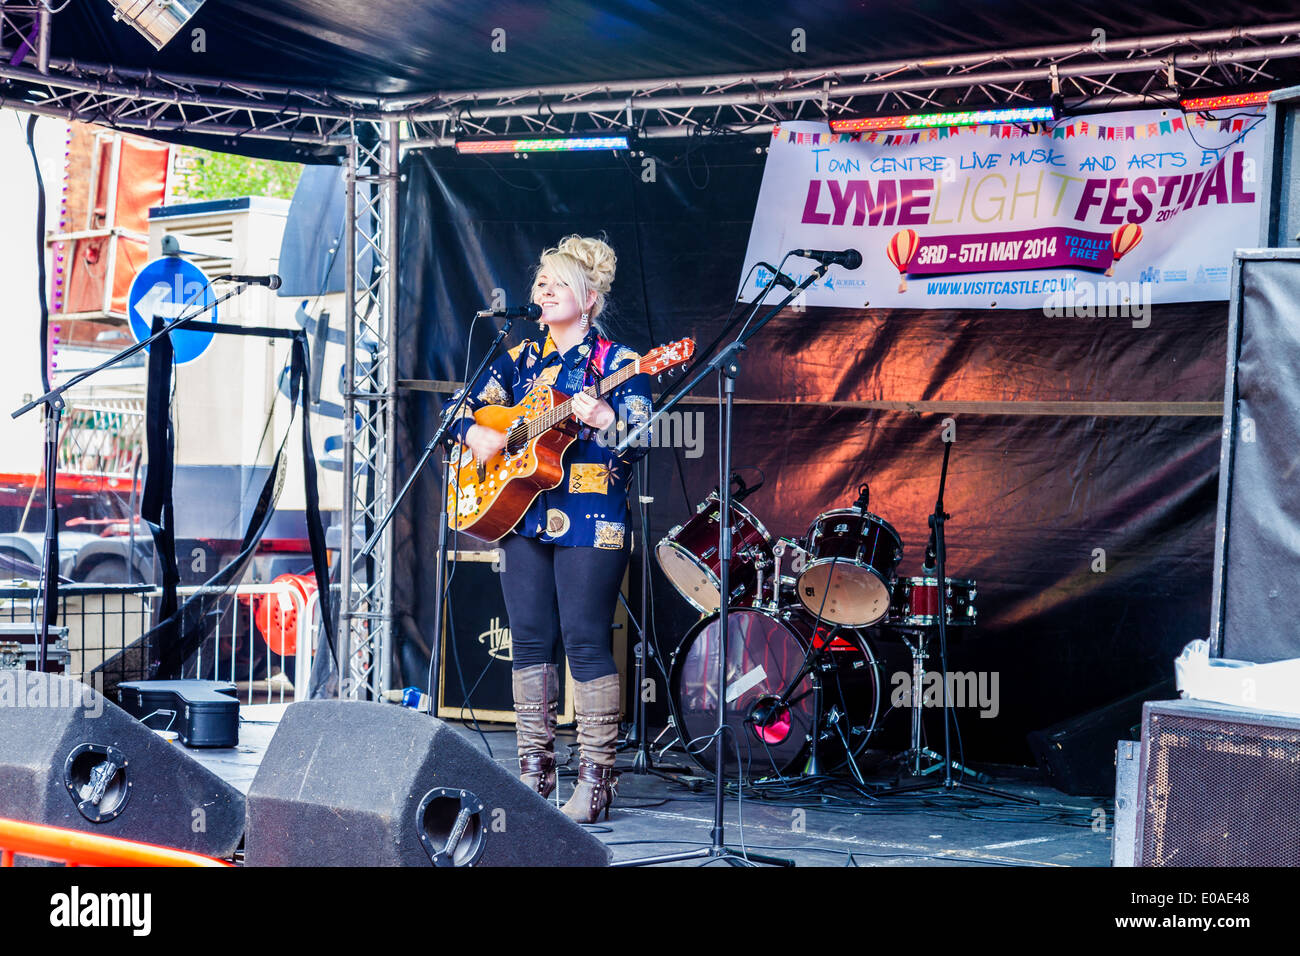 Une adolescente singer, Hollie peut Beeston,chante et joue de la guitare, sur scène, Newcastle Under Lyme,Staffordshire England UK. Banque D'Images